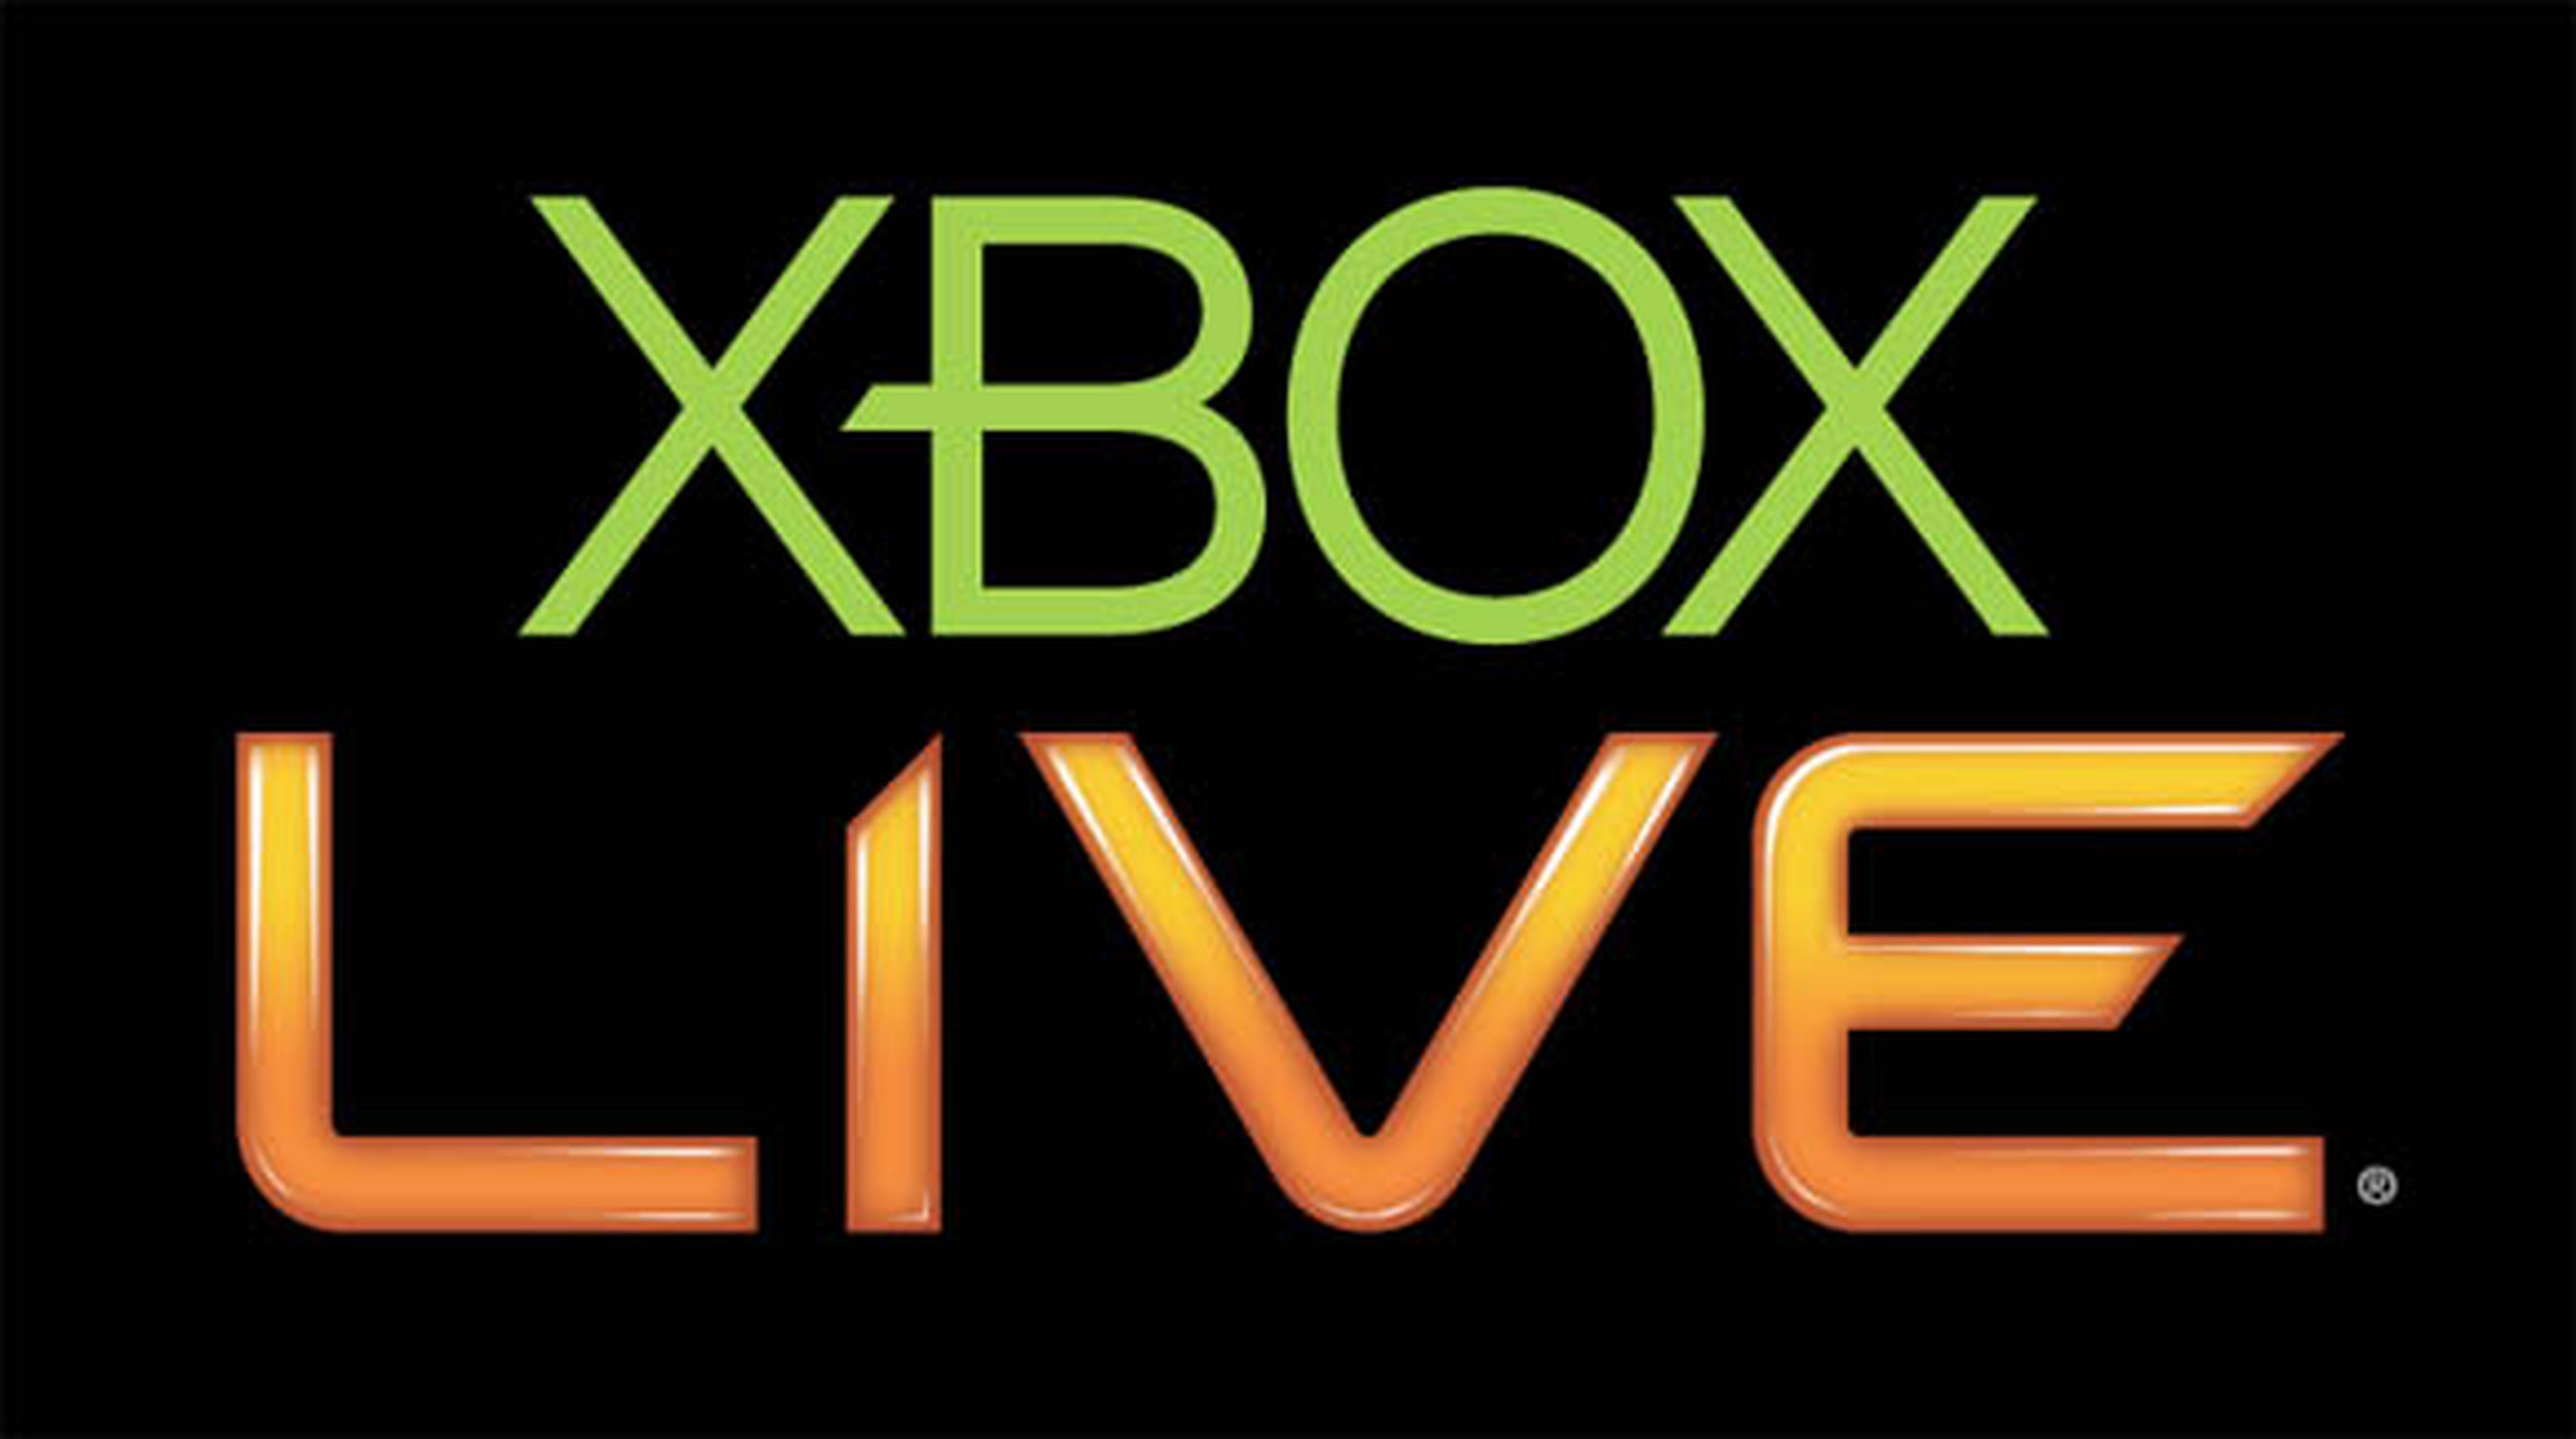 Xbox LIVE Gold gratis este fin de semana